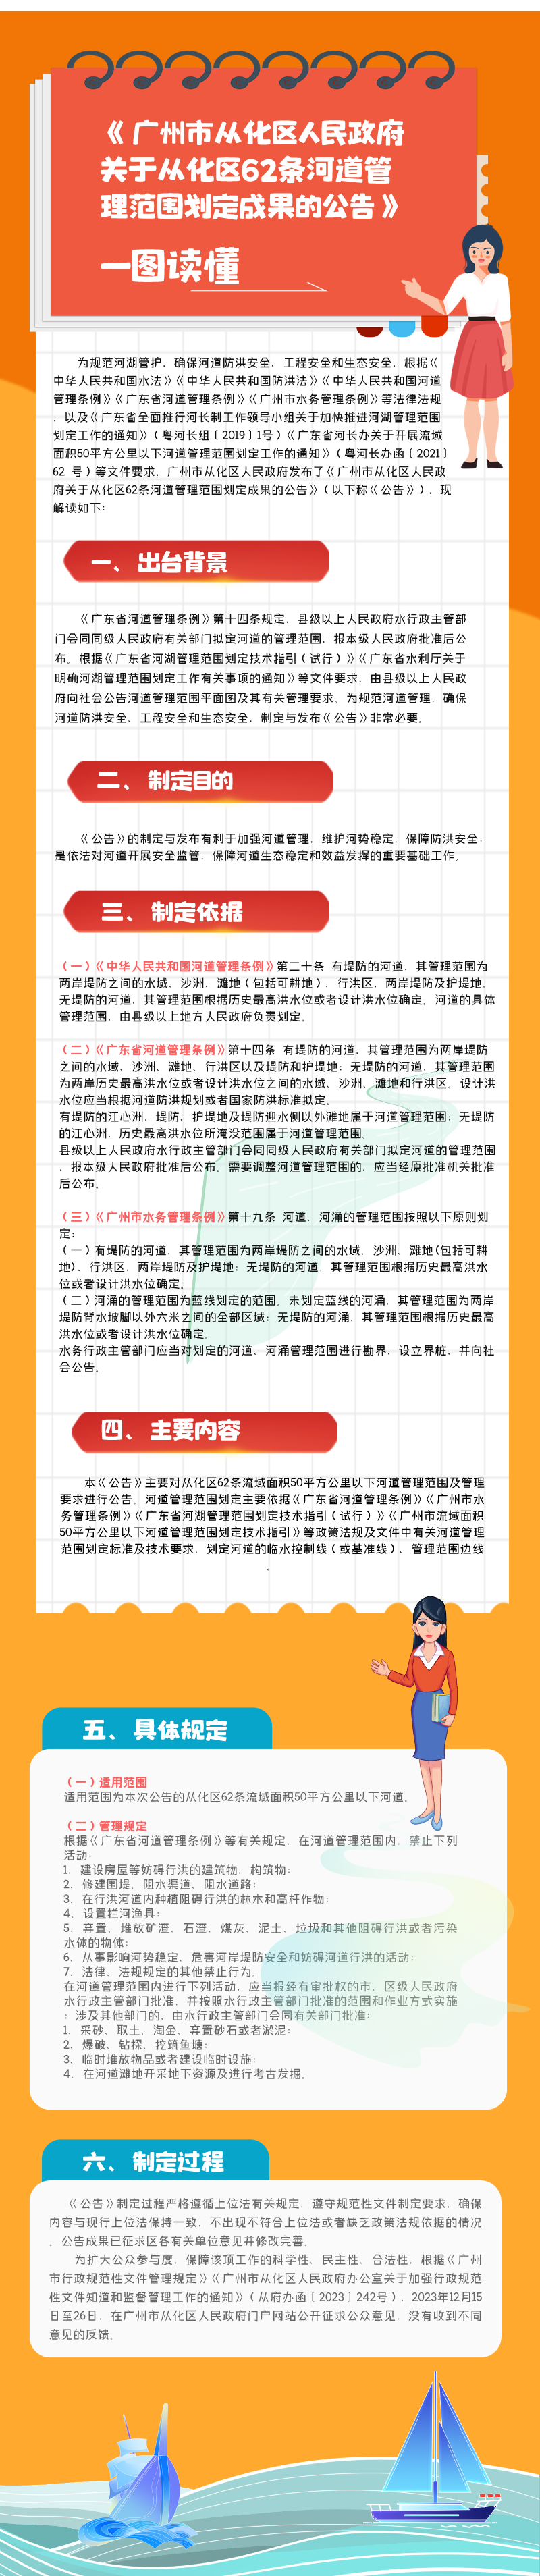 《广州市从化区人民政府关于从化区62条河道管理范围划定成果的公告》__2024-03-13+14_08_45.png